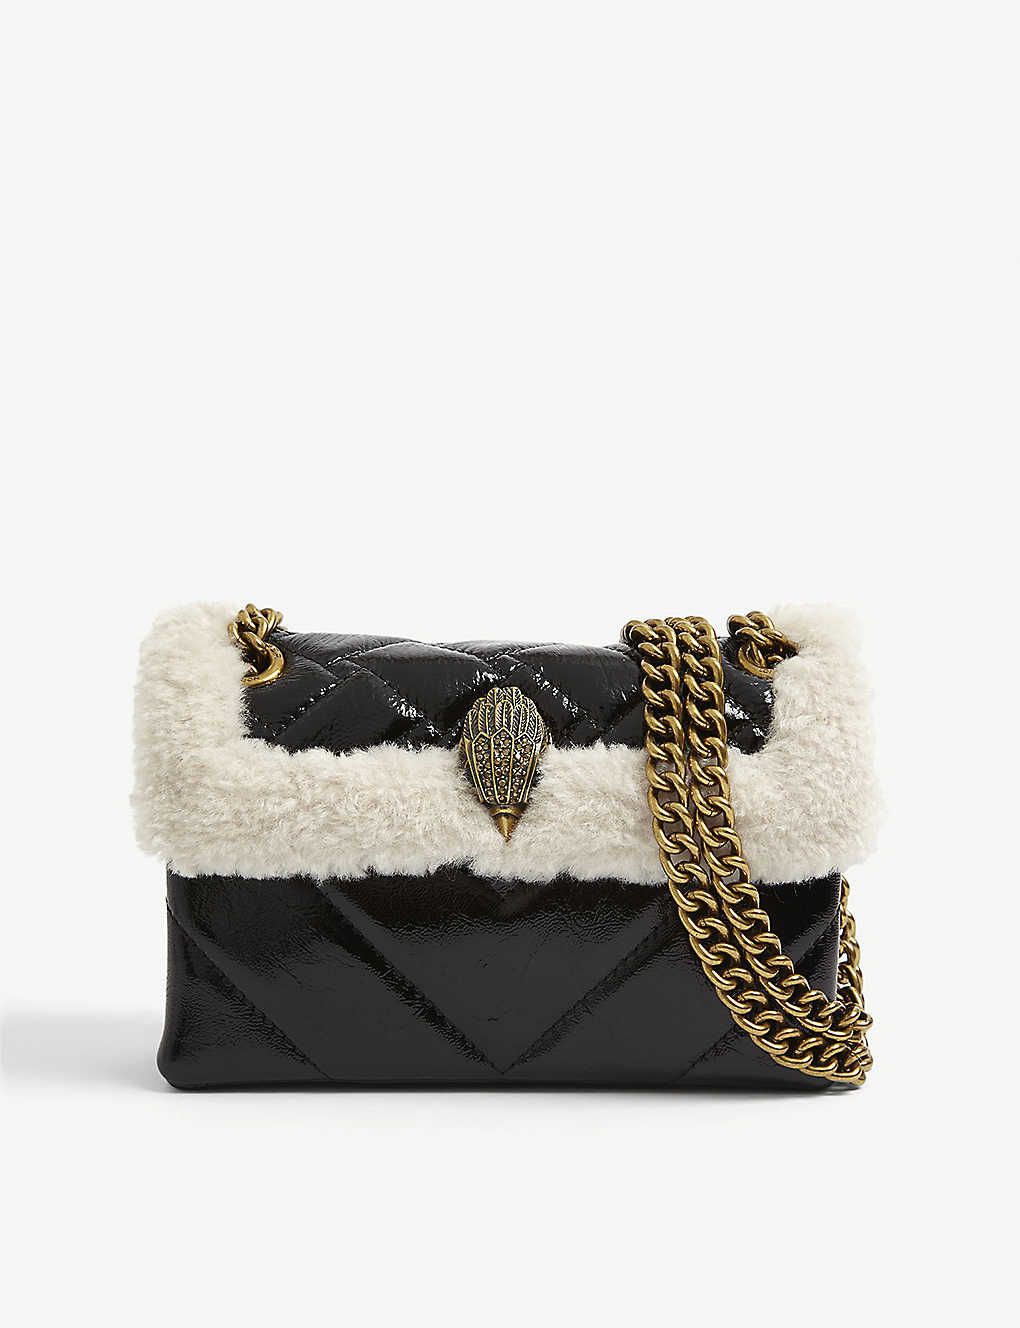 Designer Bags - Backpacks, Gucci, Prada & more | Selfridges | Bags,  Mulberry bag, Mulberry shoulder bag